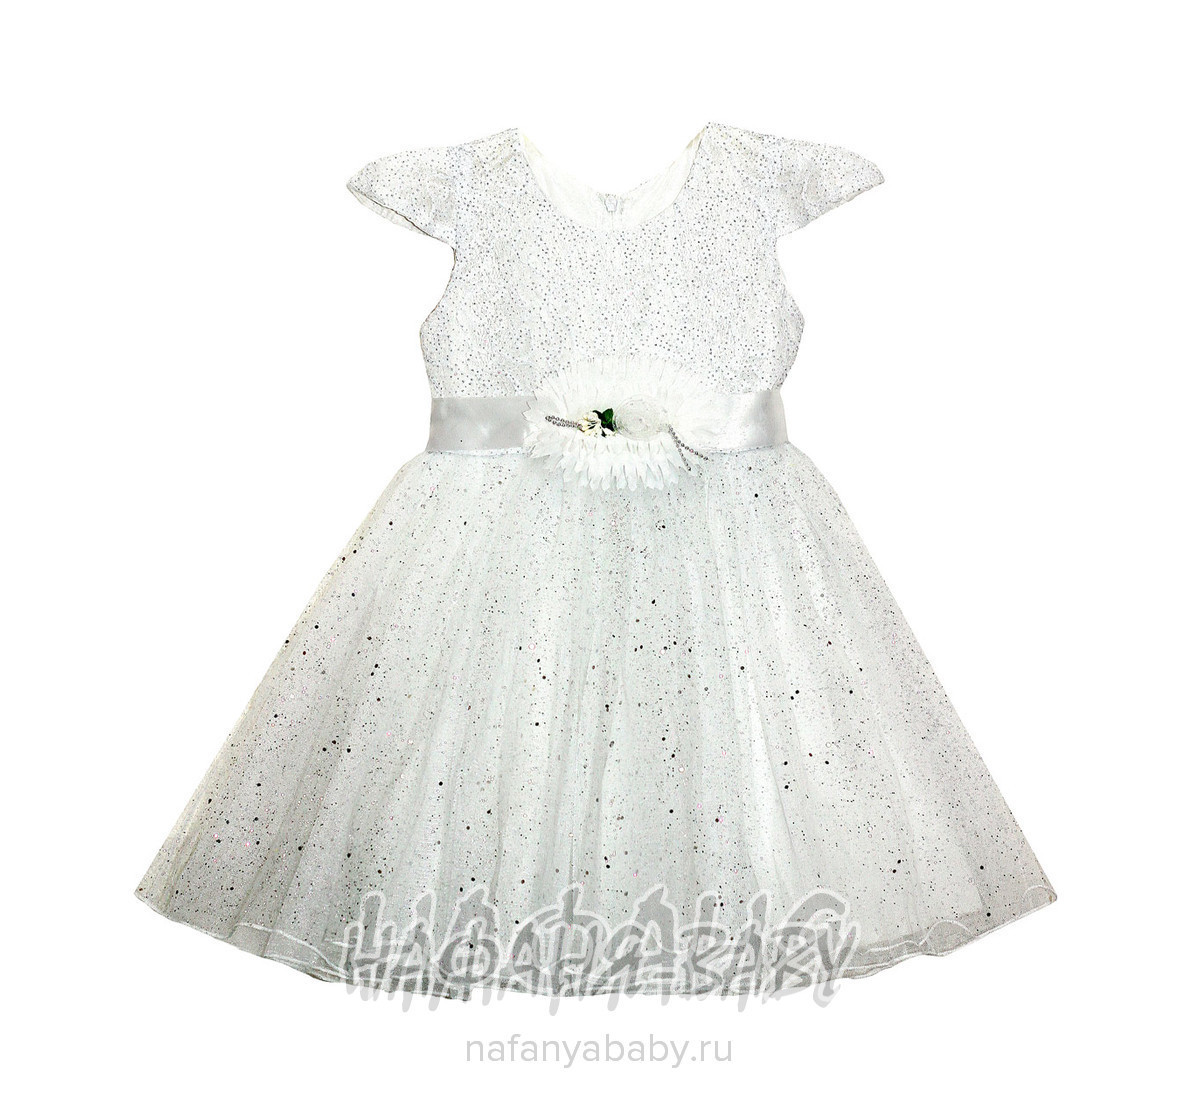 Детское платье KGMART, купить в интернет магазине Нафаня. арт: 2192.